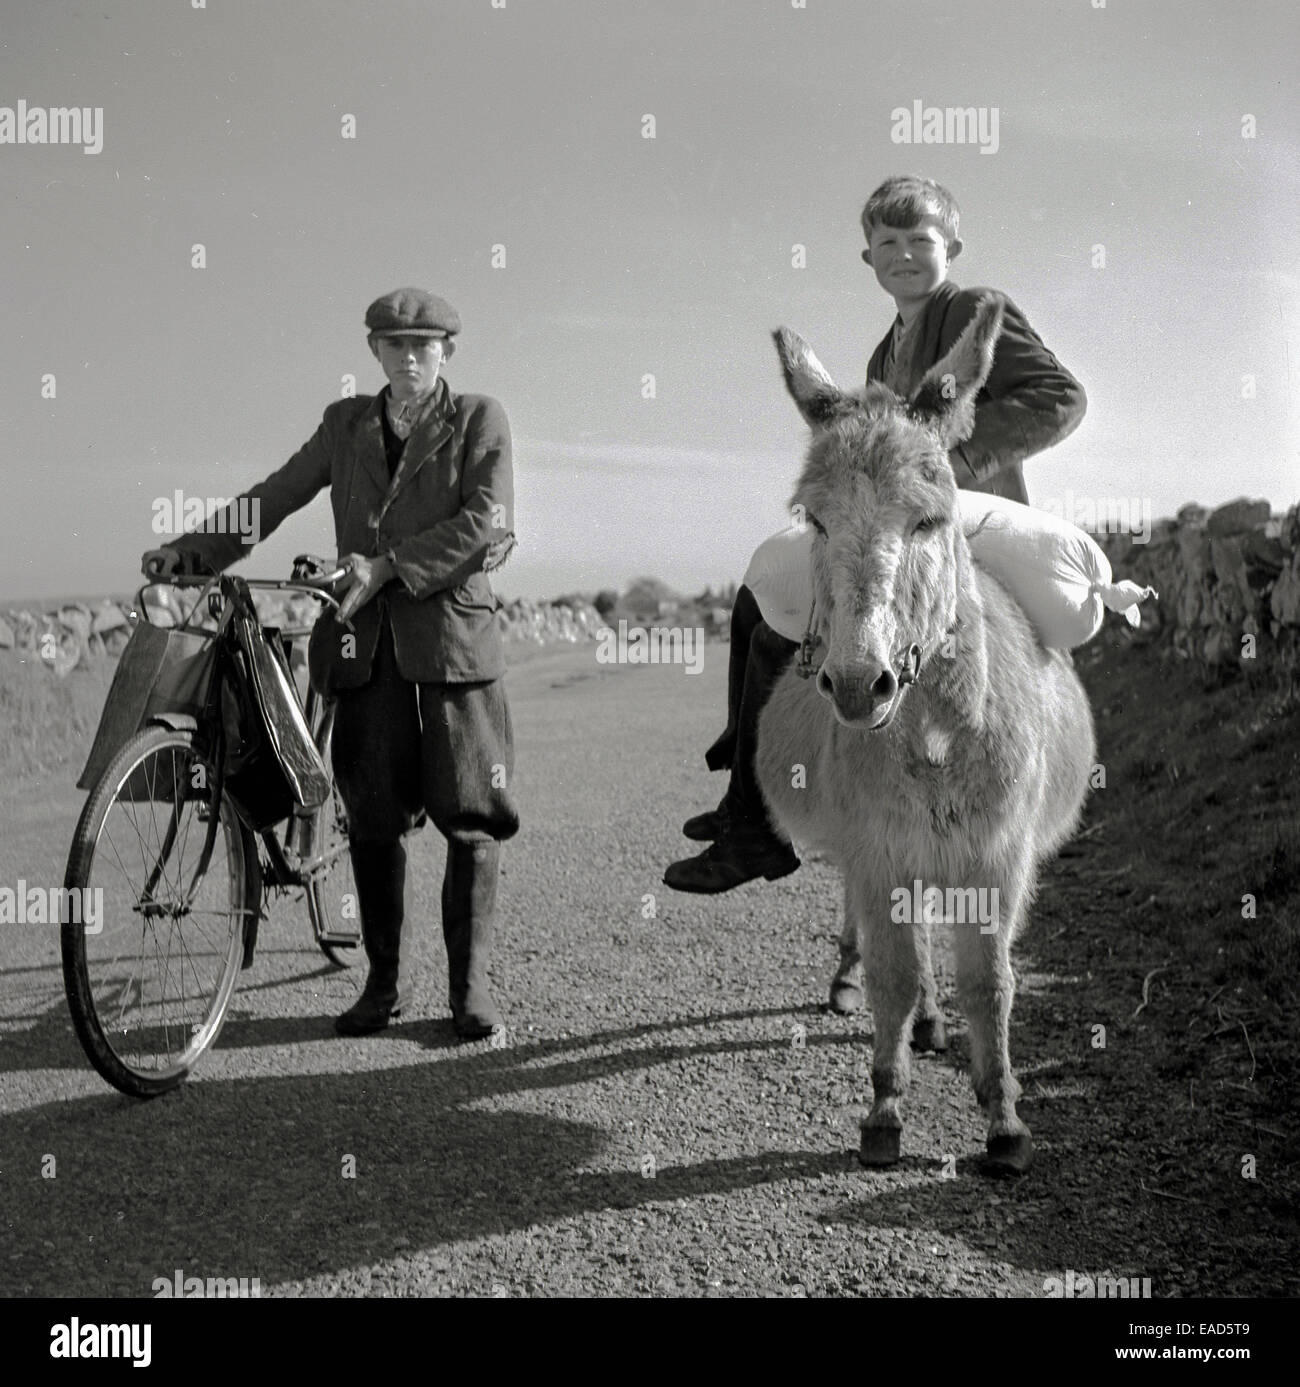 1950, quadro storico di J Allan Cash di due ragazzi irlandesi fuori su una corsia rurale. Uno in più-quattro e un cappellino di stoffa è in piedi con la sua bicicletta con borse shopping sopra il manubrio, mentre l'altro ragazzo è appollaiato su un asino, portando un sacco di farina, Irlanda Foto Stock